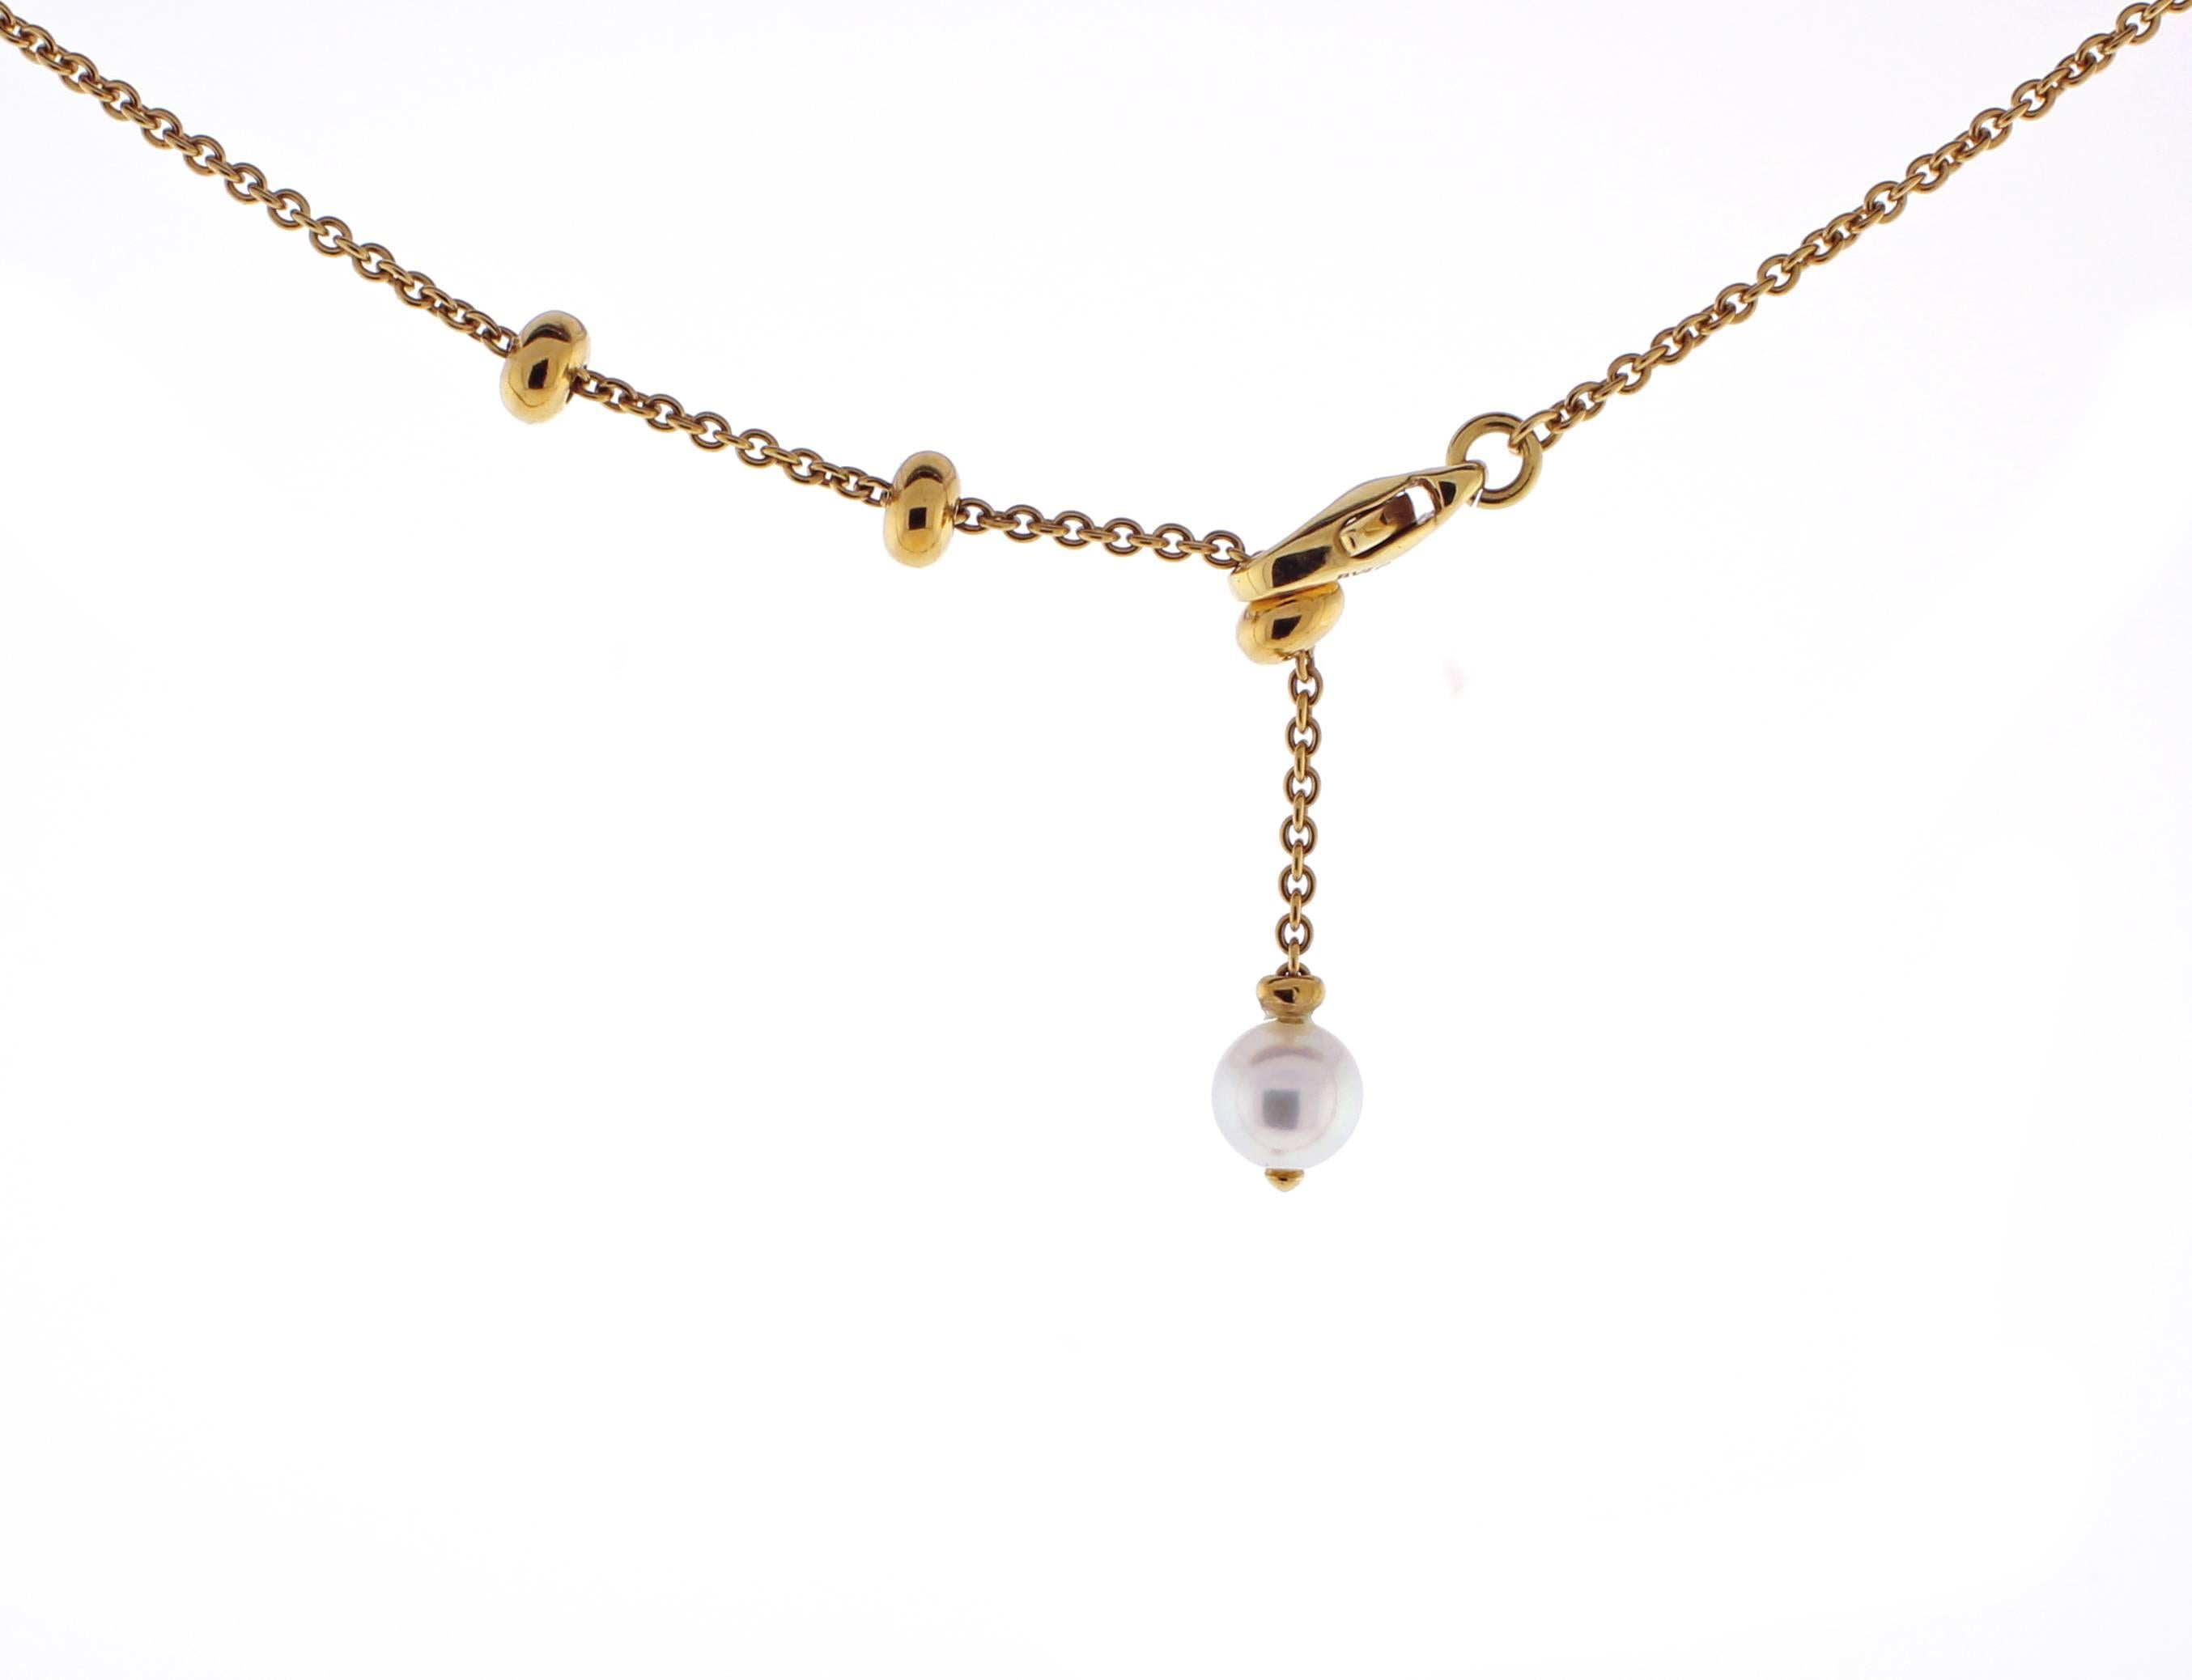 Women's or Men's Bvlgari Allegra Multi-Gem Pendant Necklace